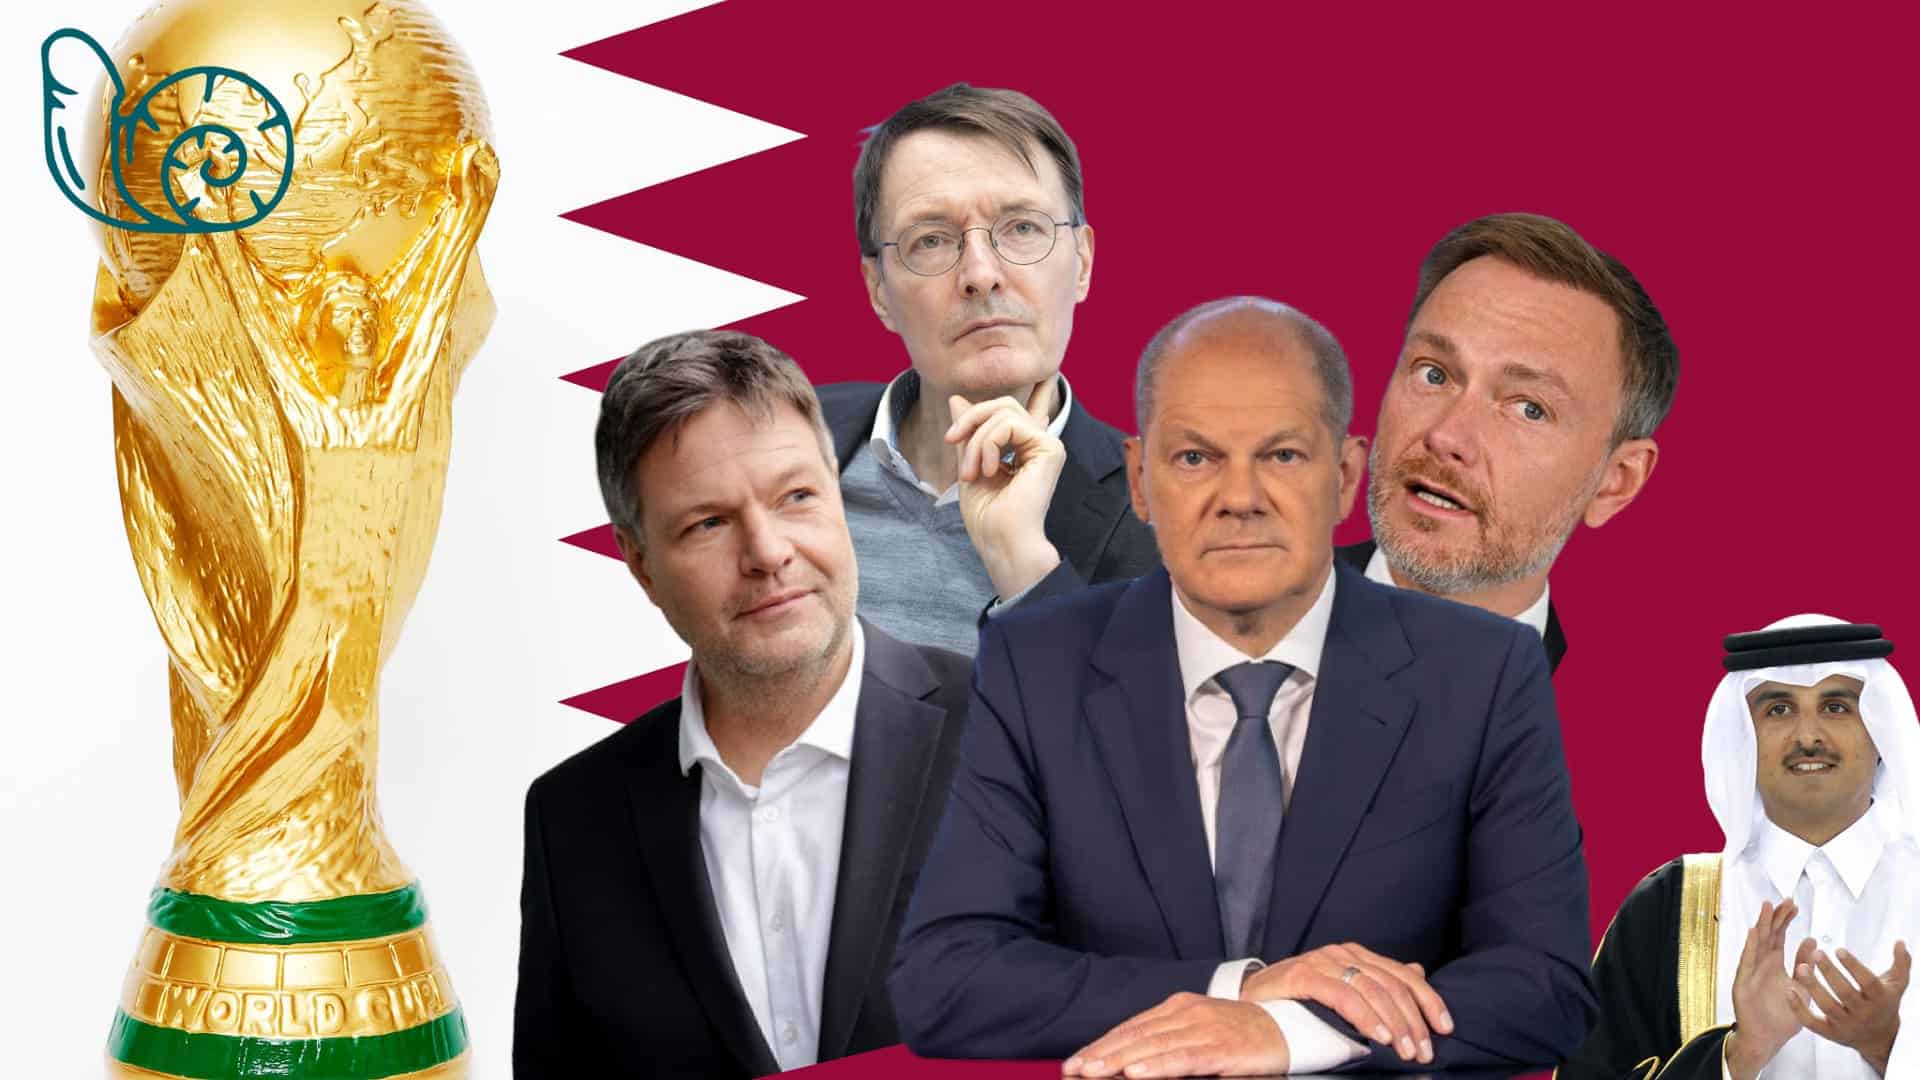 Bild für den Beitrag: Regierung startet WM-Kampagne für Katar